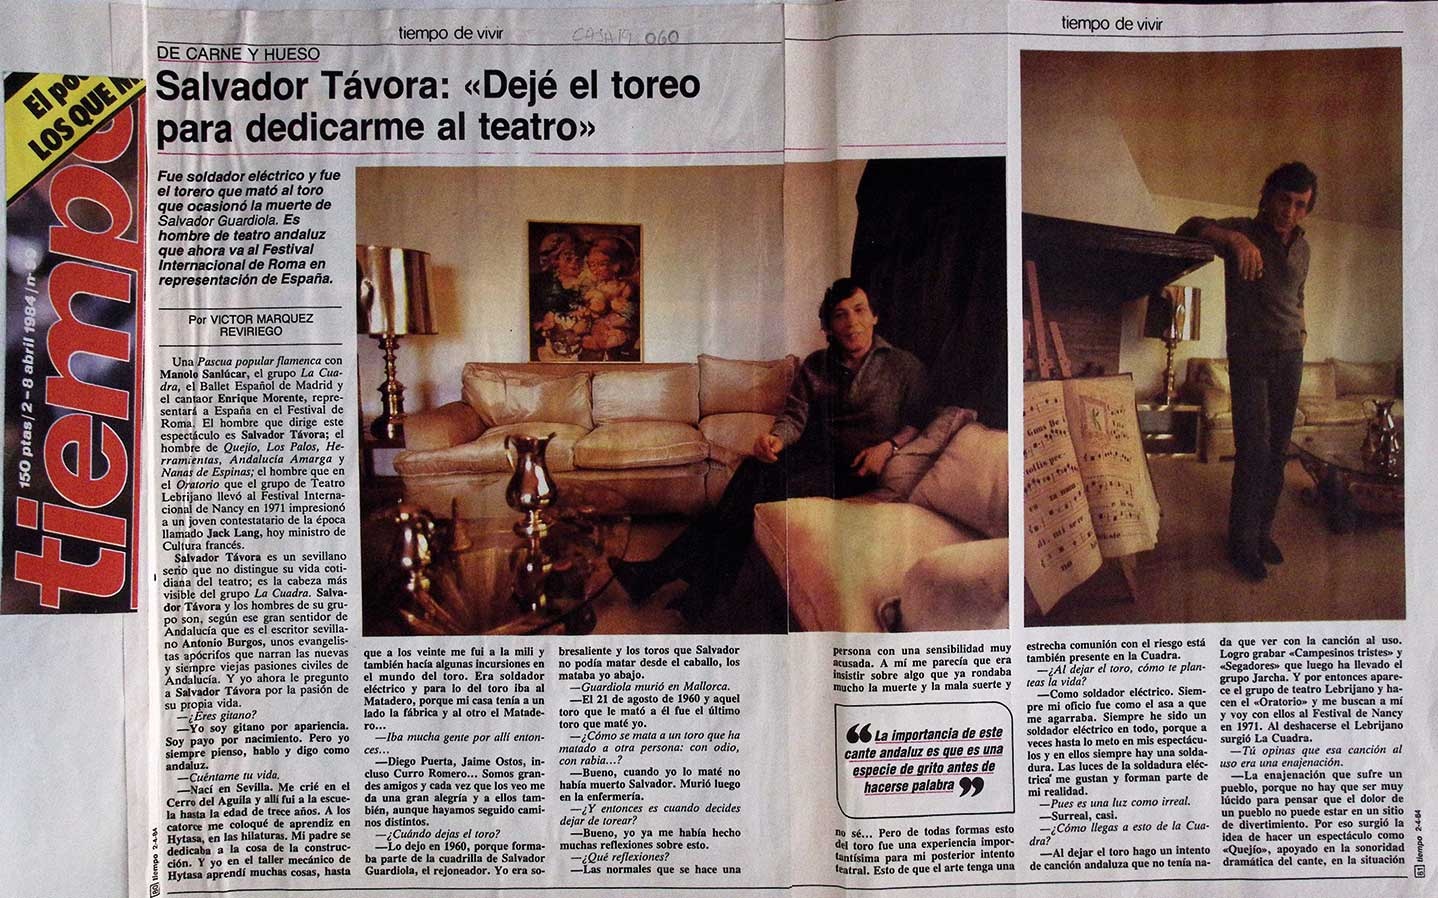 Salvador Távora: "Dejé el toreo para dedicarme al teatro"